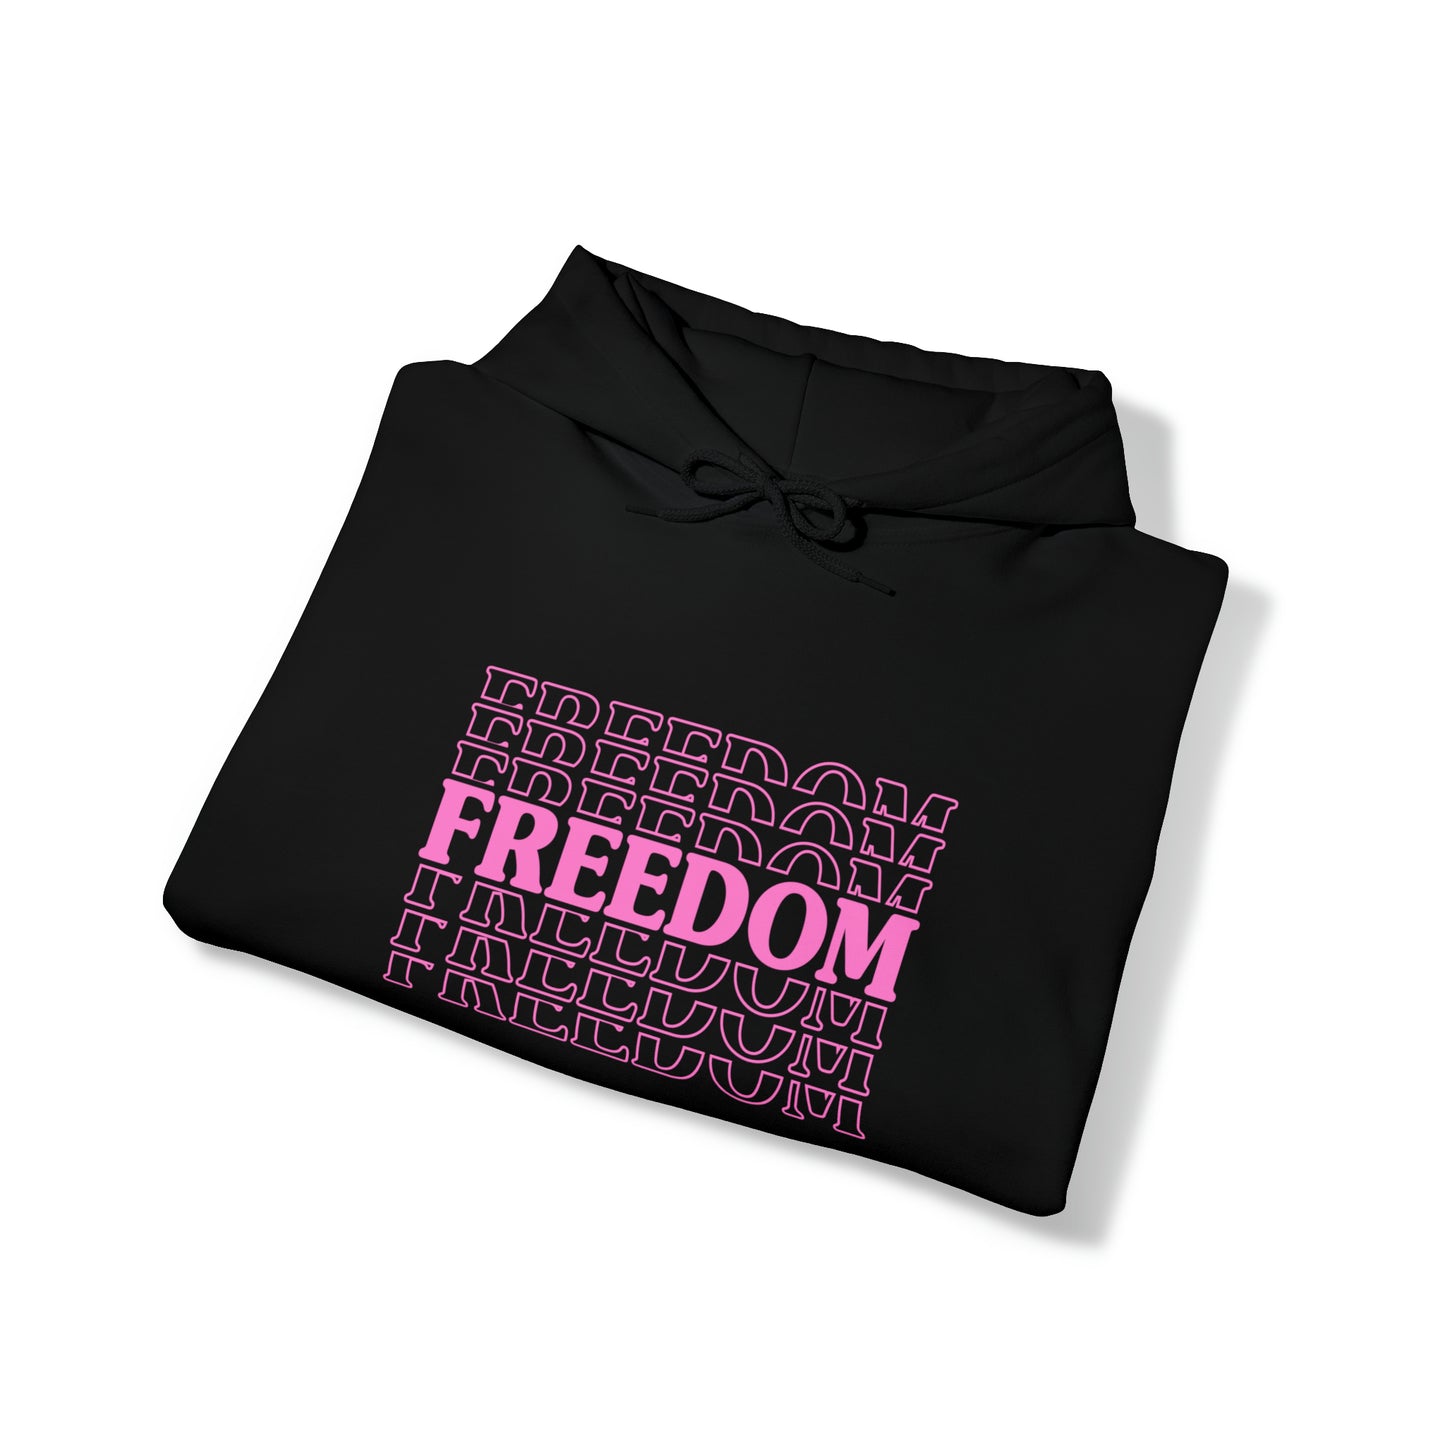 Freedom Women's Heavy Blend™ Hooded Sweatshirt